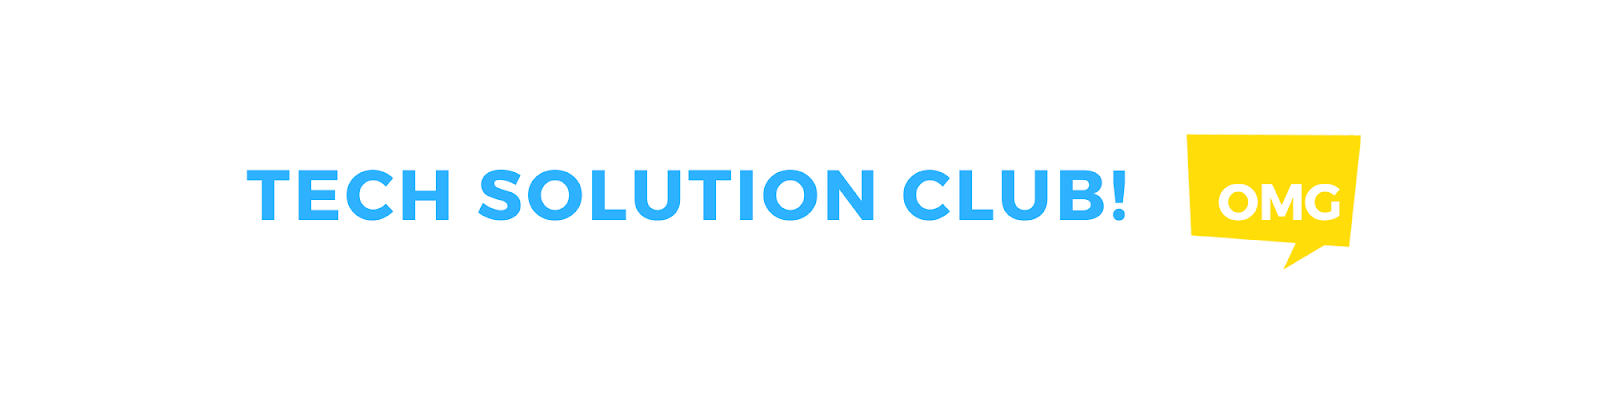 Techsolution club 